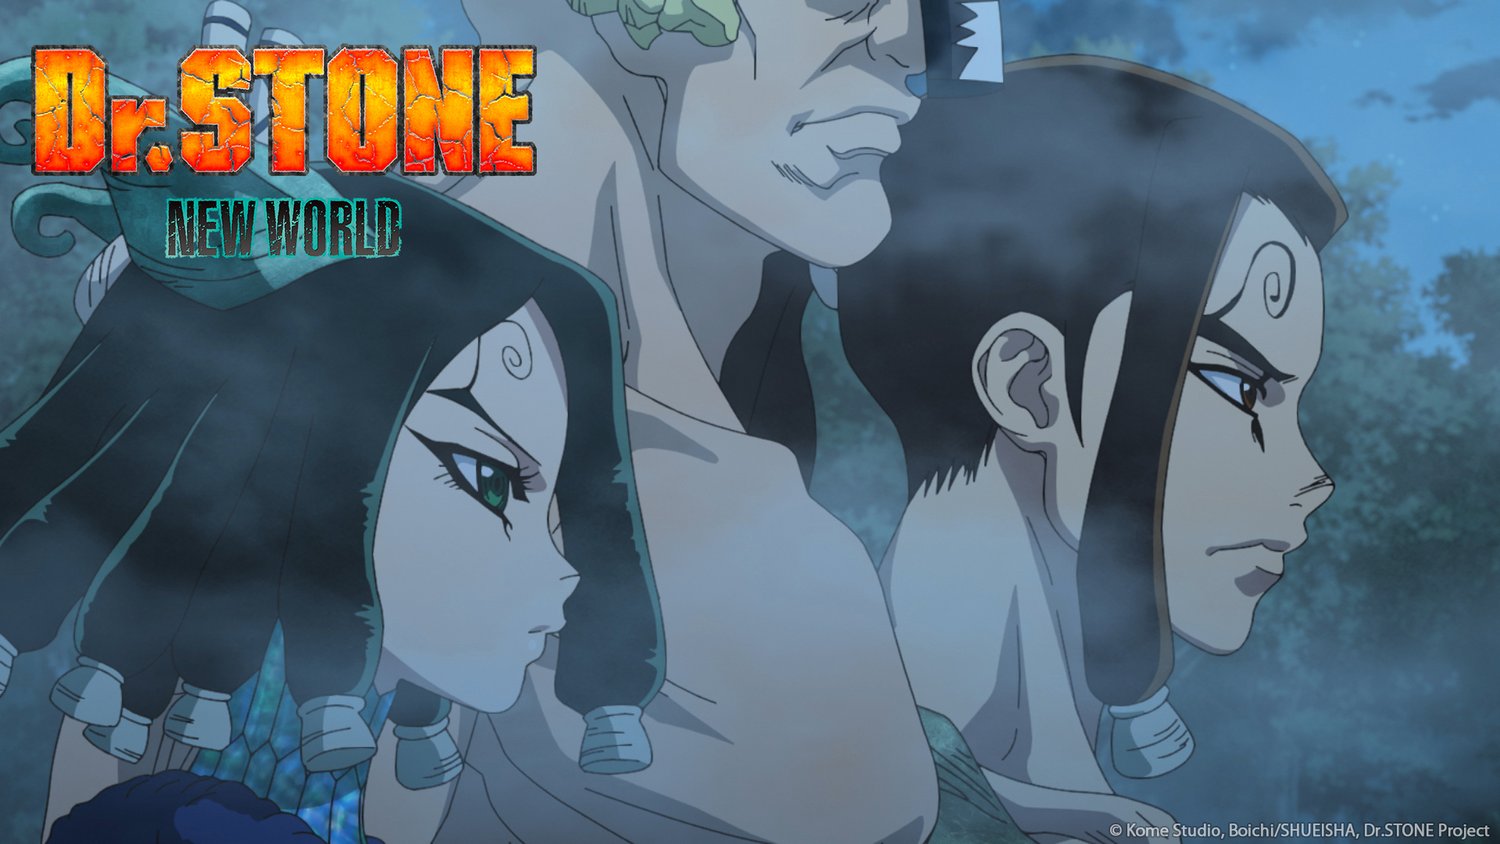 Anime-byme on X:  Minami Hokutozai  Dr. Stone: New World Episode 2 # DrSTONE #DrSTONE第3期 #Anime #Animebyme  / X